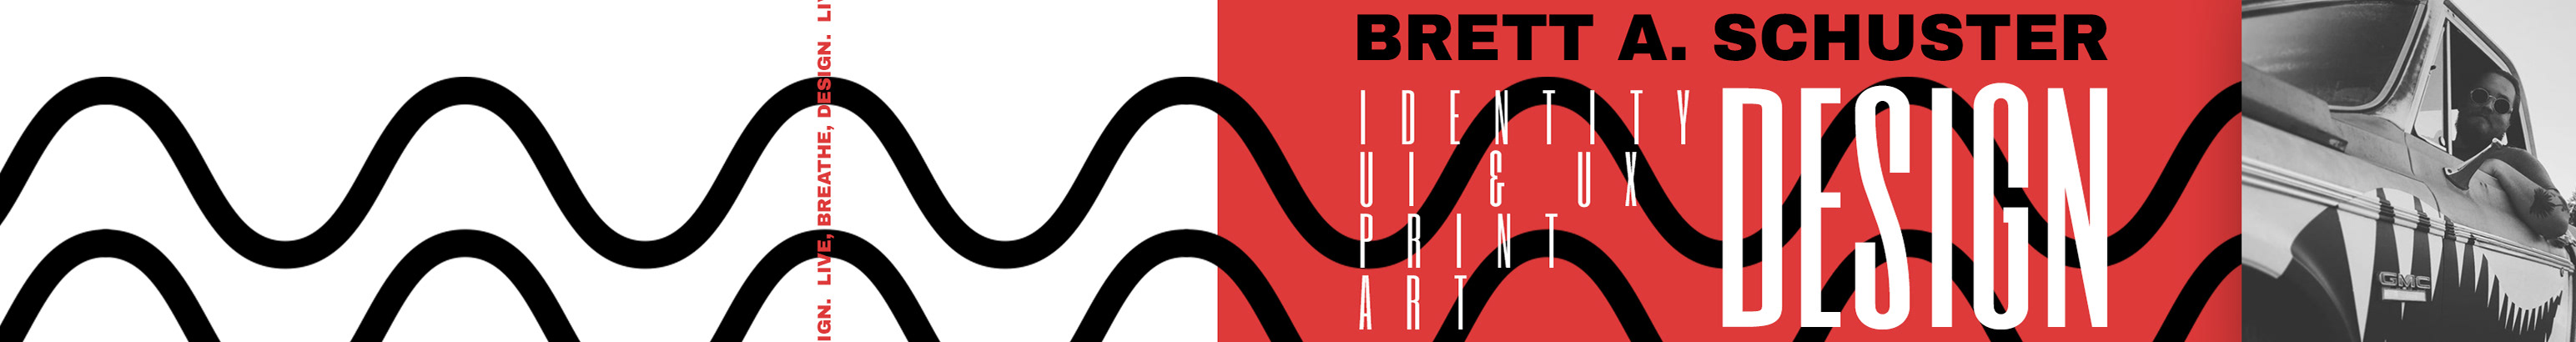 Brett A. Schuster's profile banner